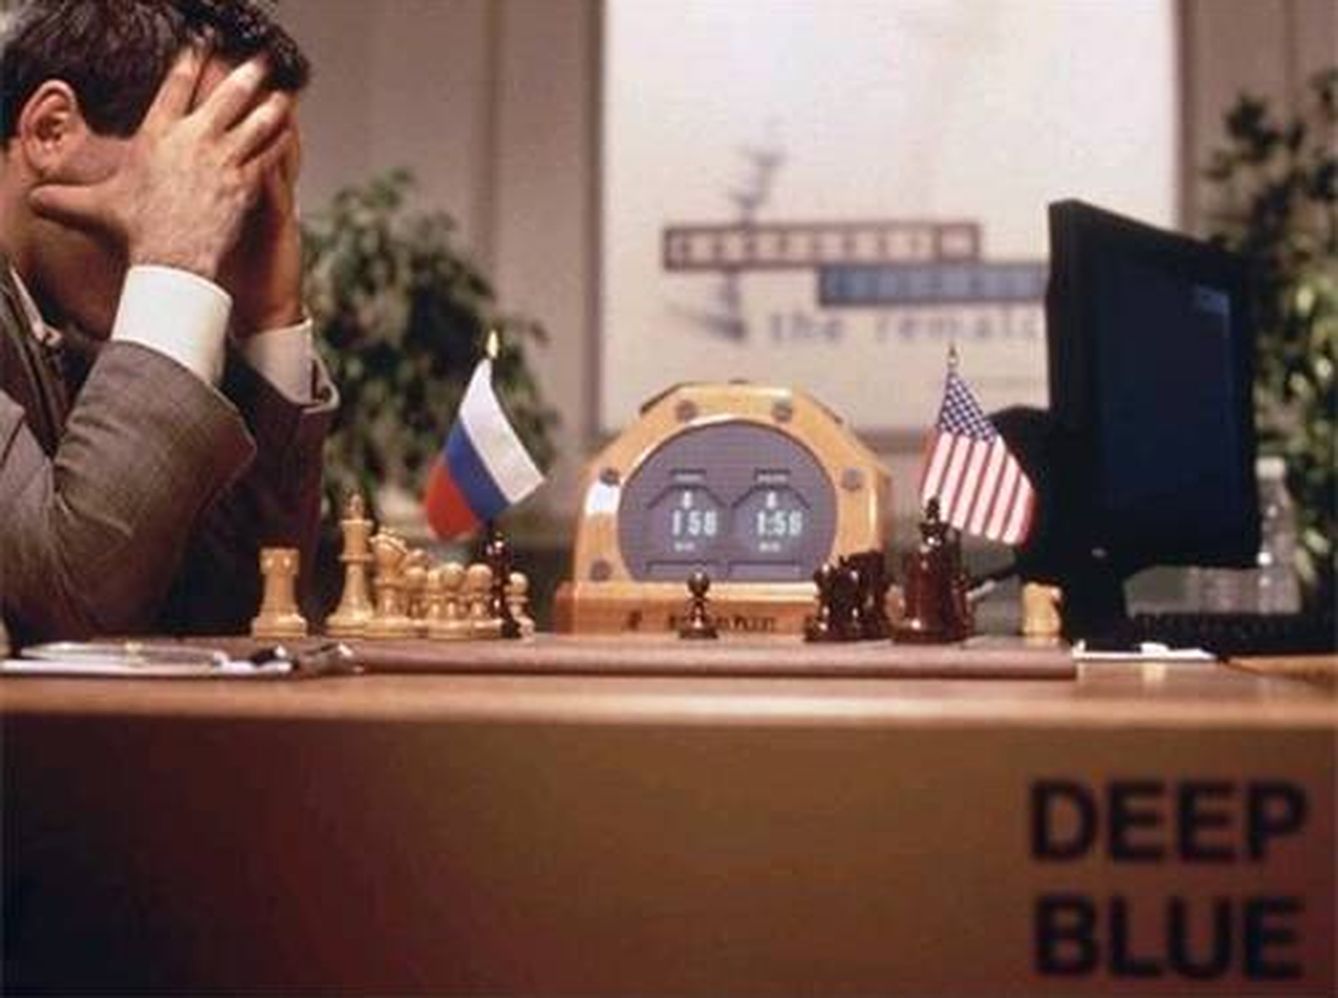 Kaspárov, contra el programa Deep Blue.